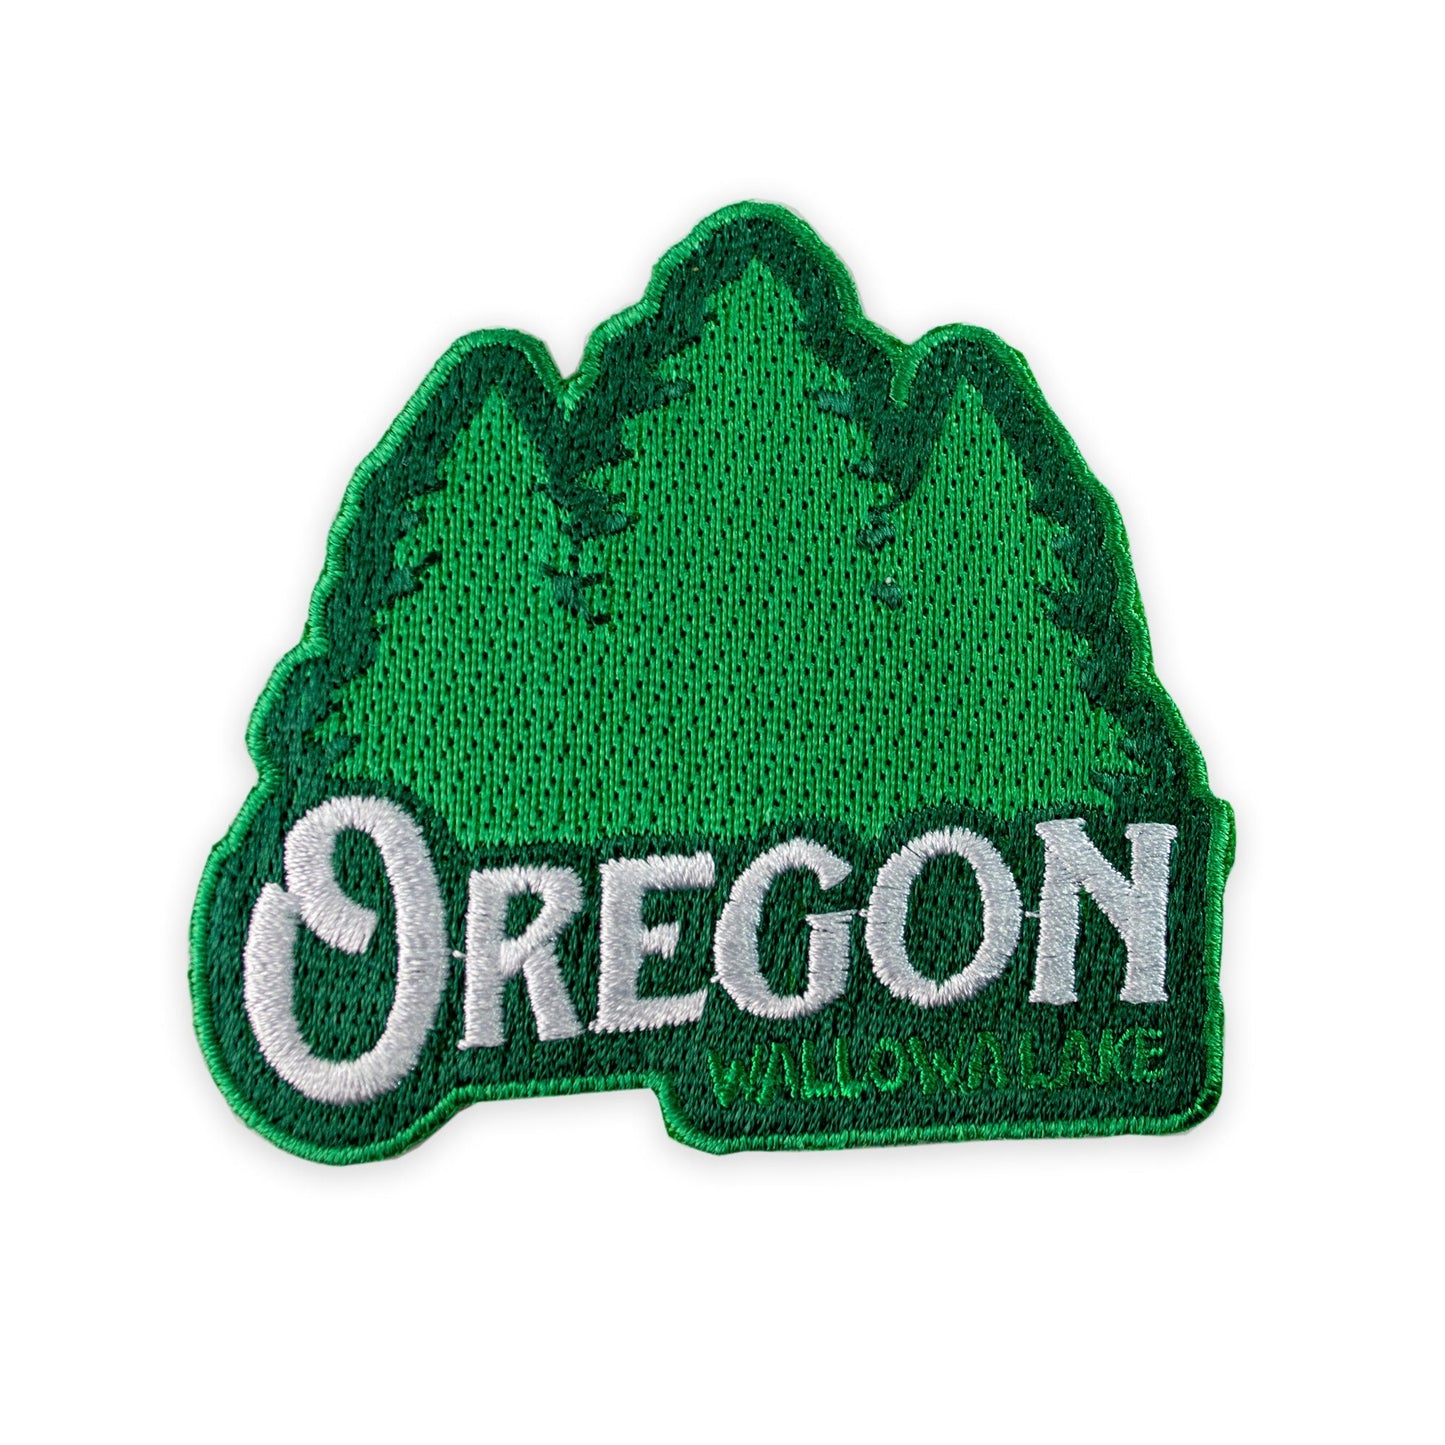 Oregon Wallowa Lake | Embroidered Patch